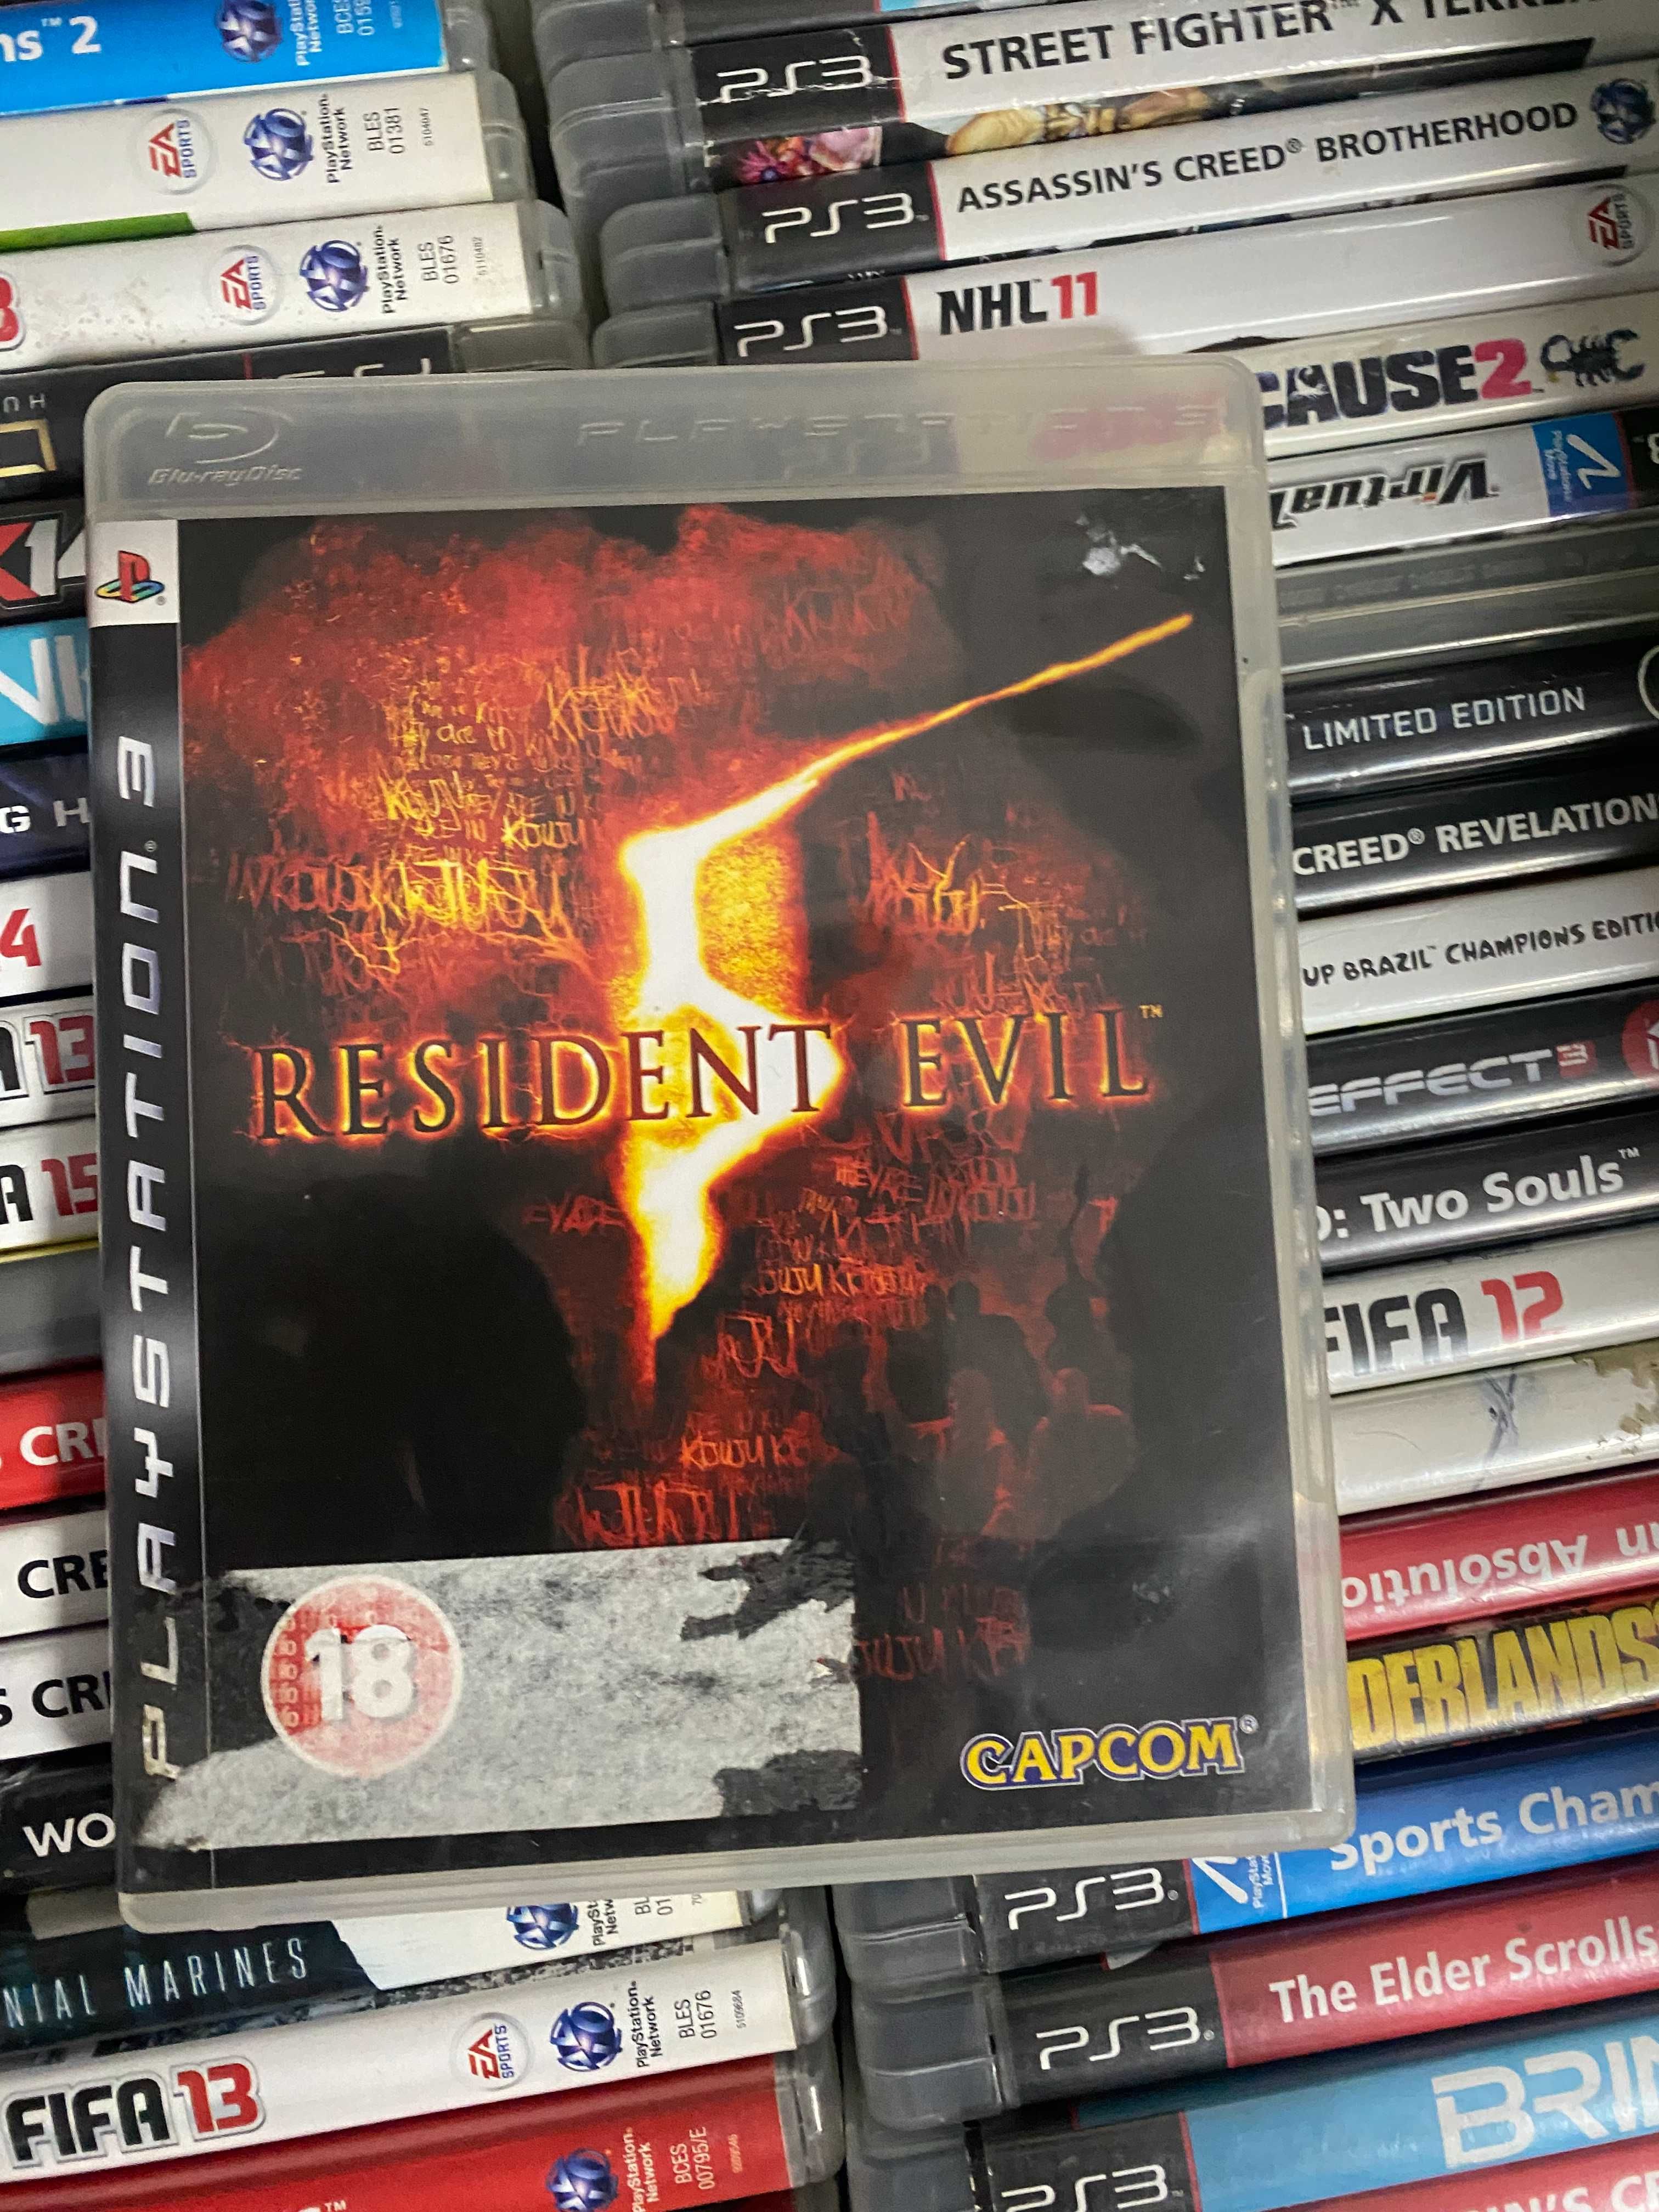 Resident Evil 5|PS3